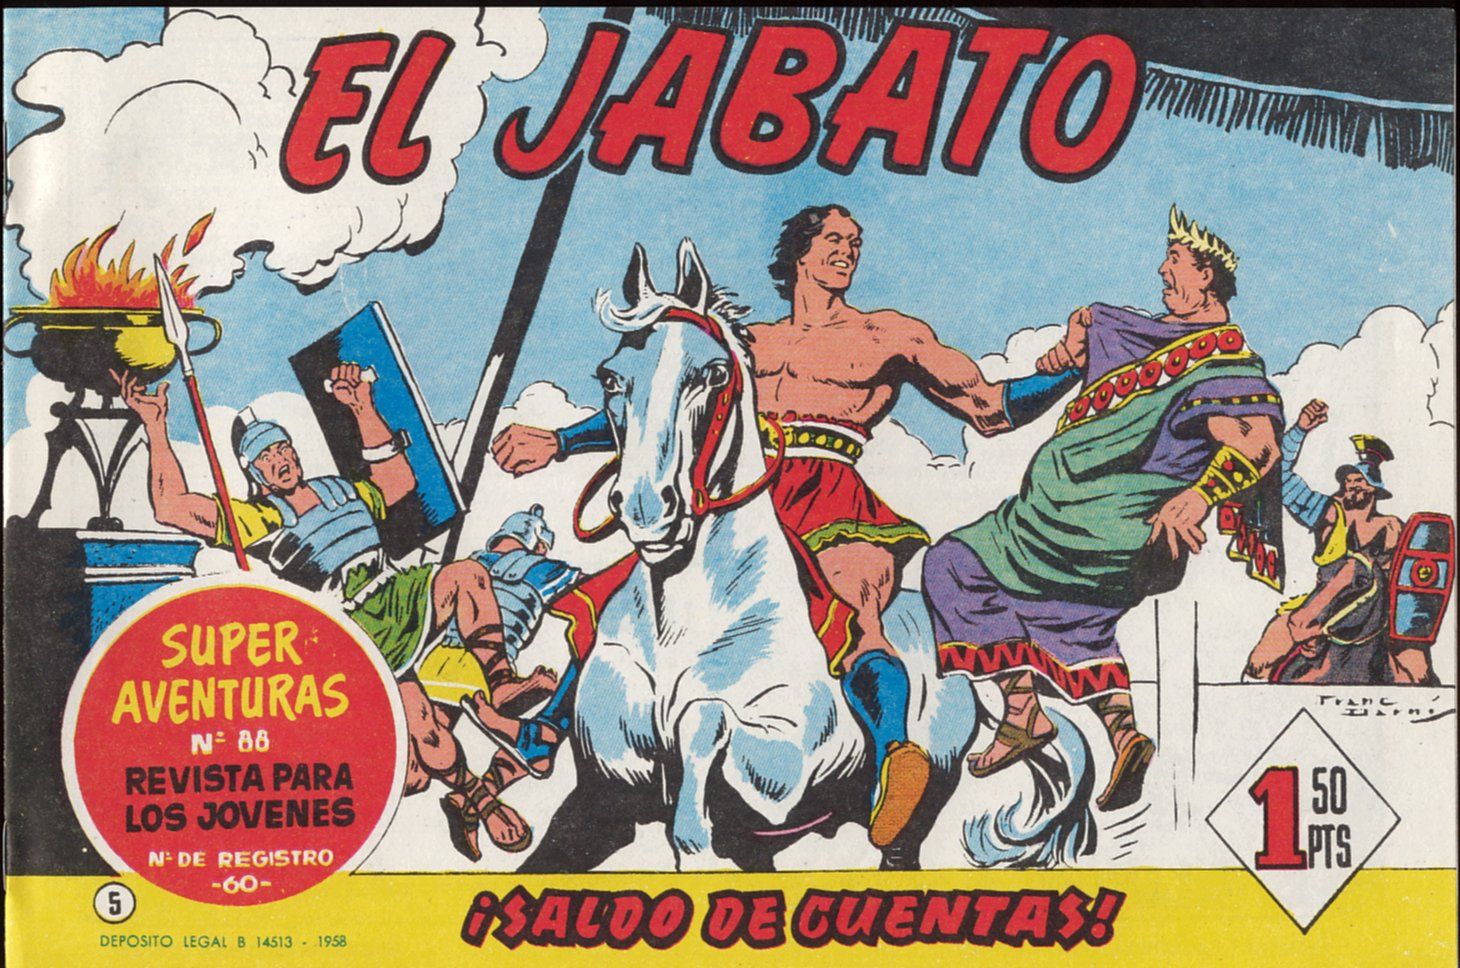 jabato 005 00 - Coleccion El Jabato (Superaventuras) nºs 1-381 (Cuadernillos apaisados)